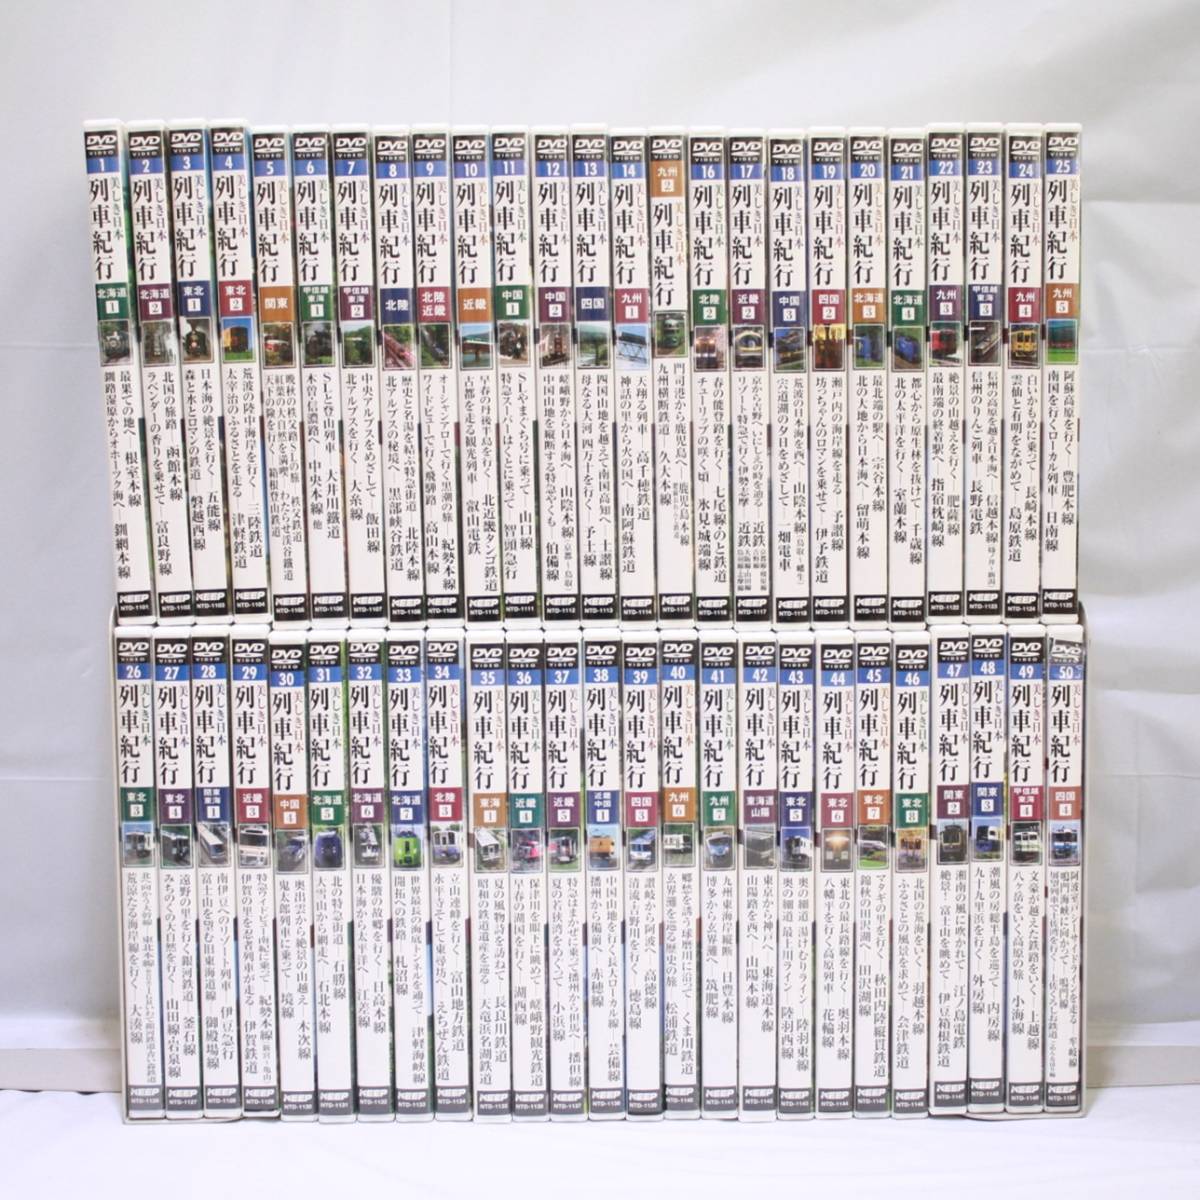 超歓迎された】 列車紀行 DVDコレクション 全50巻 美しき日本 - DVD/ブルーレイ - hlt.no